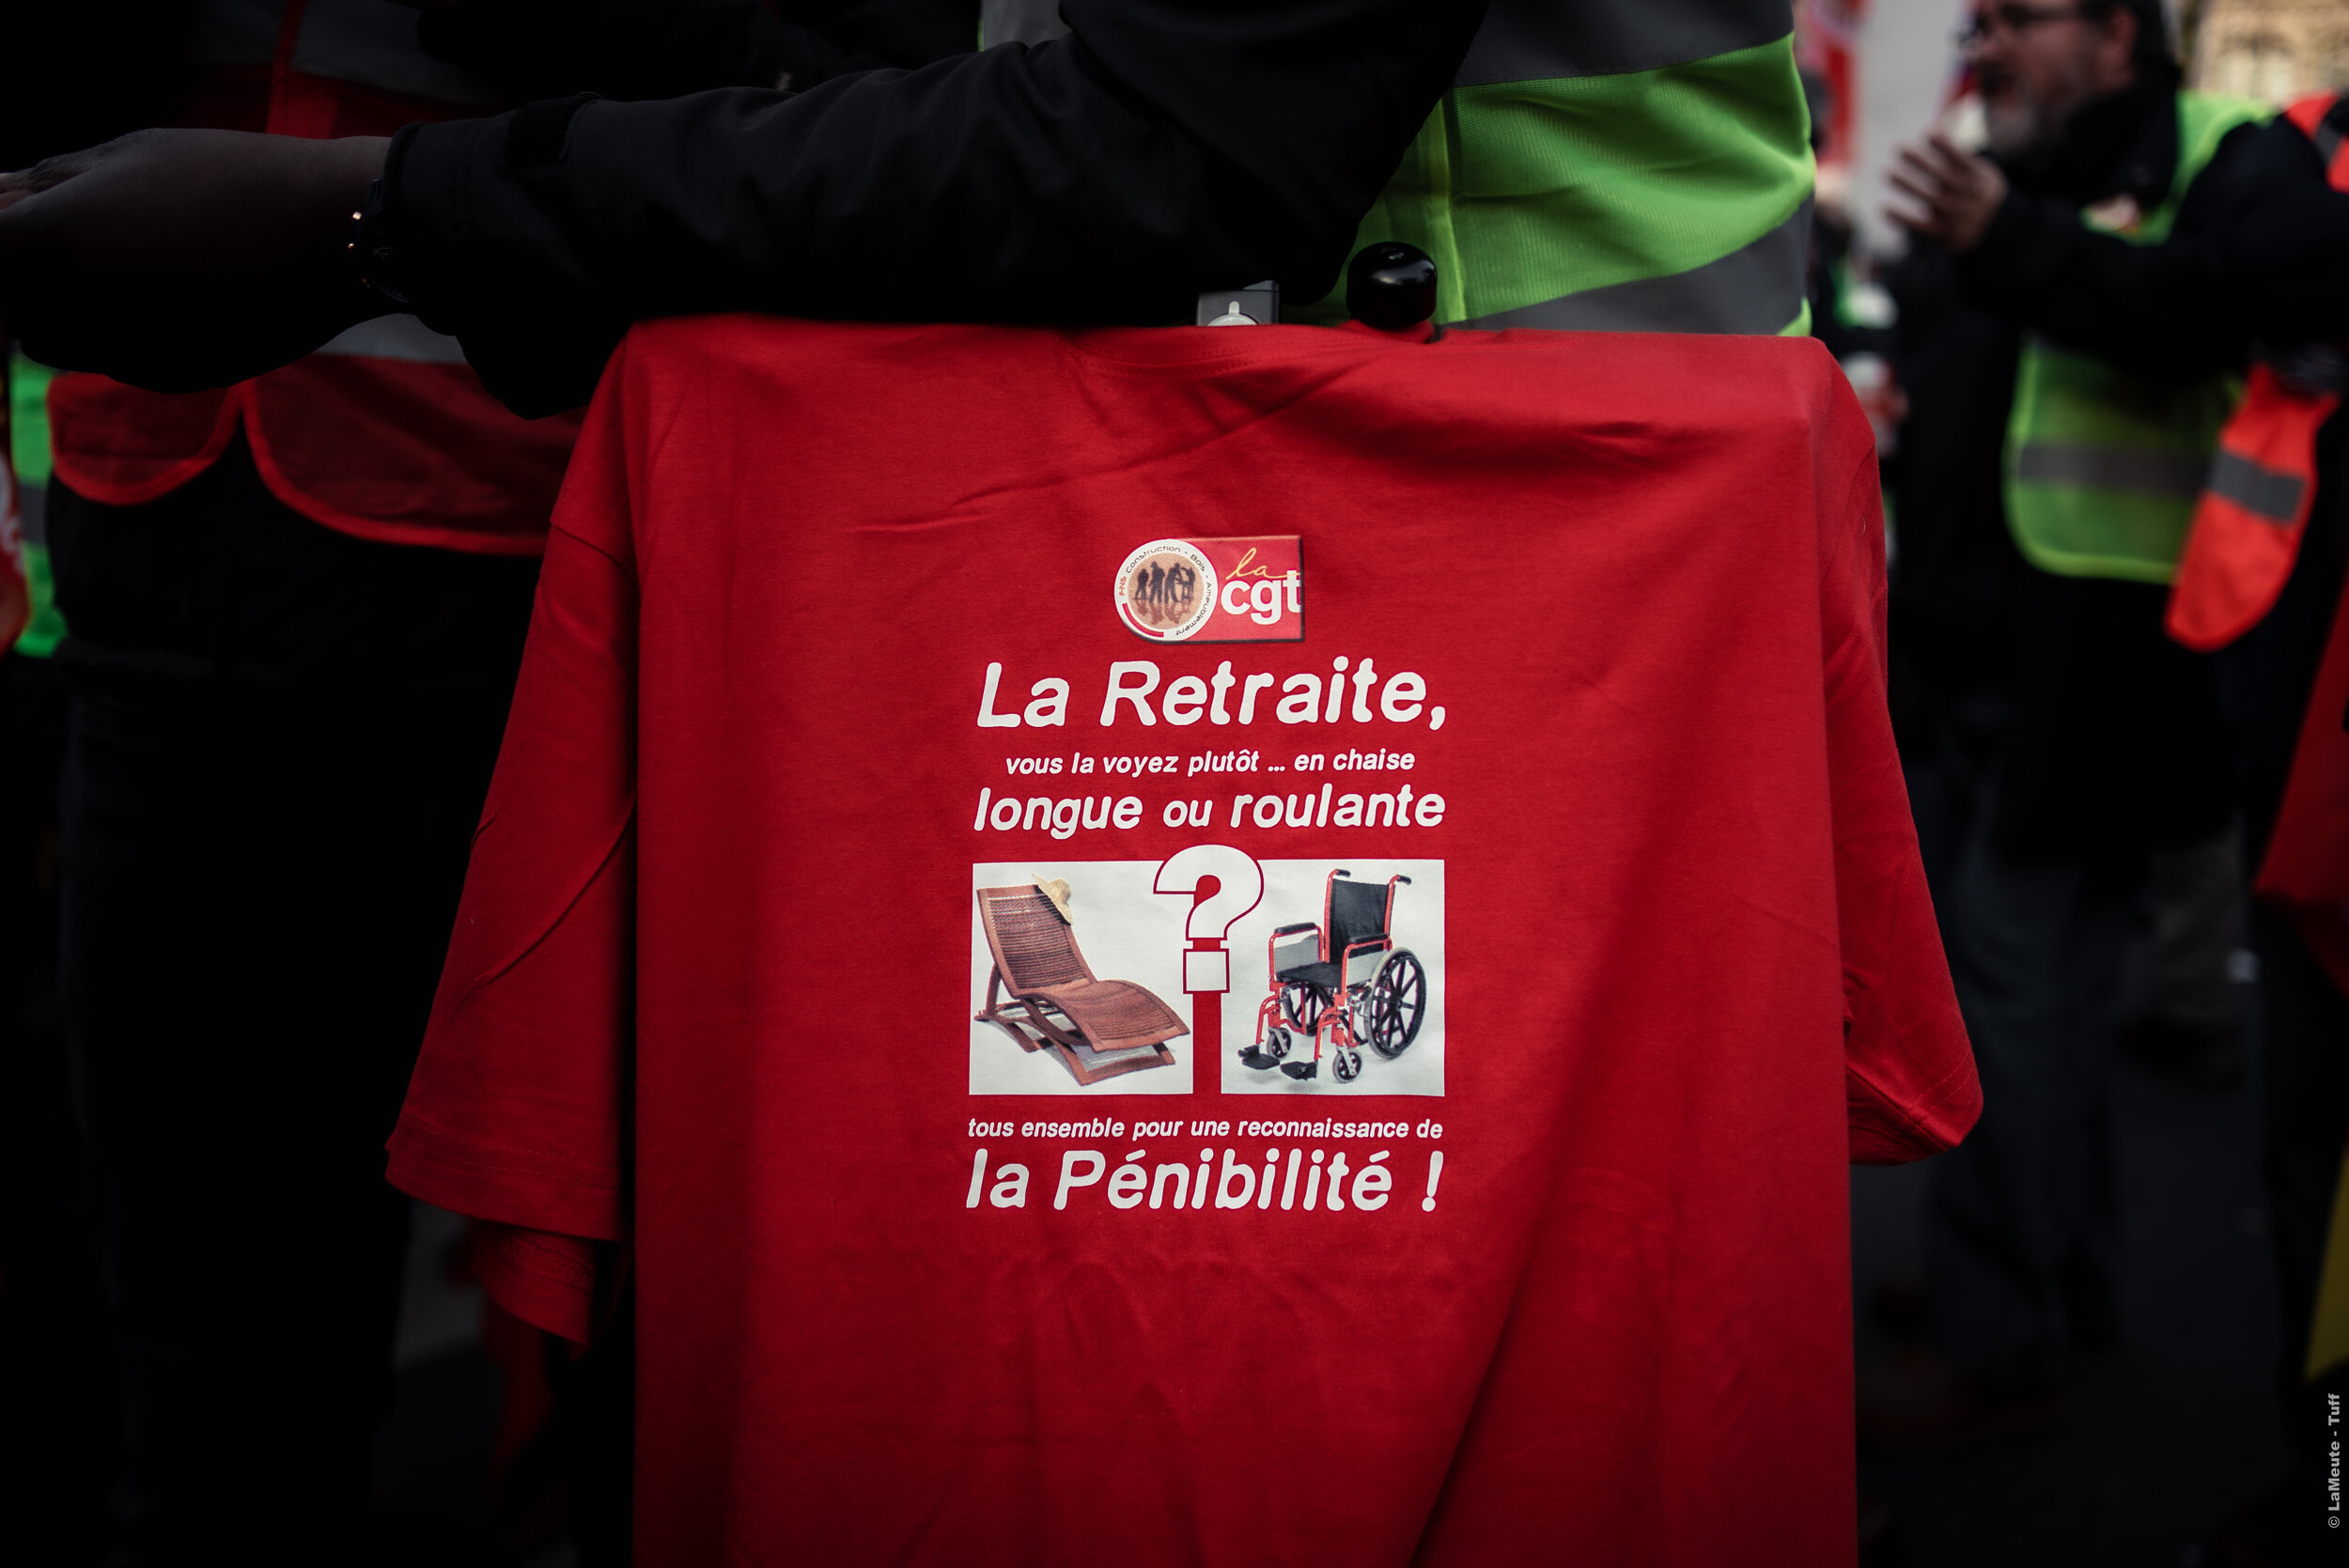  Le t-shirt d'un manifestant affilié au syndicat CGT sur la retraite. © LaMeute - Tuff 